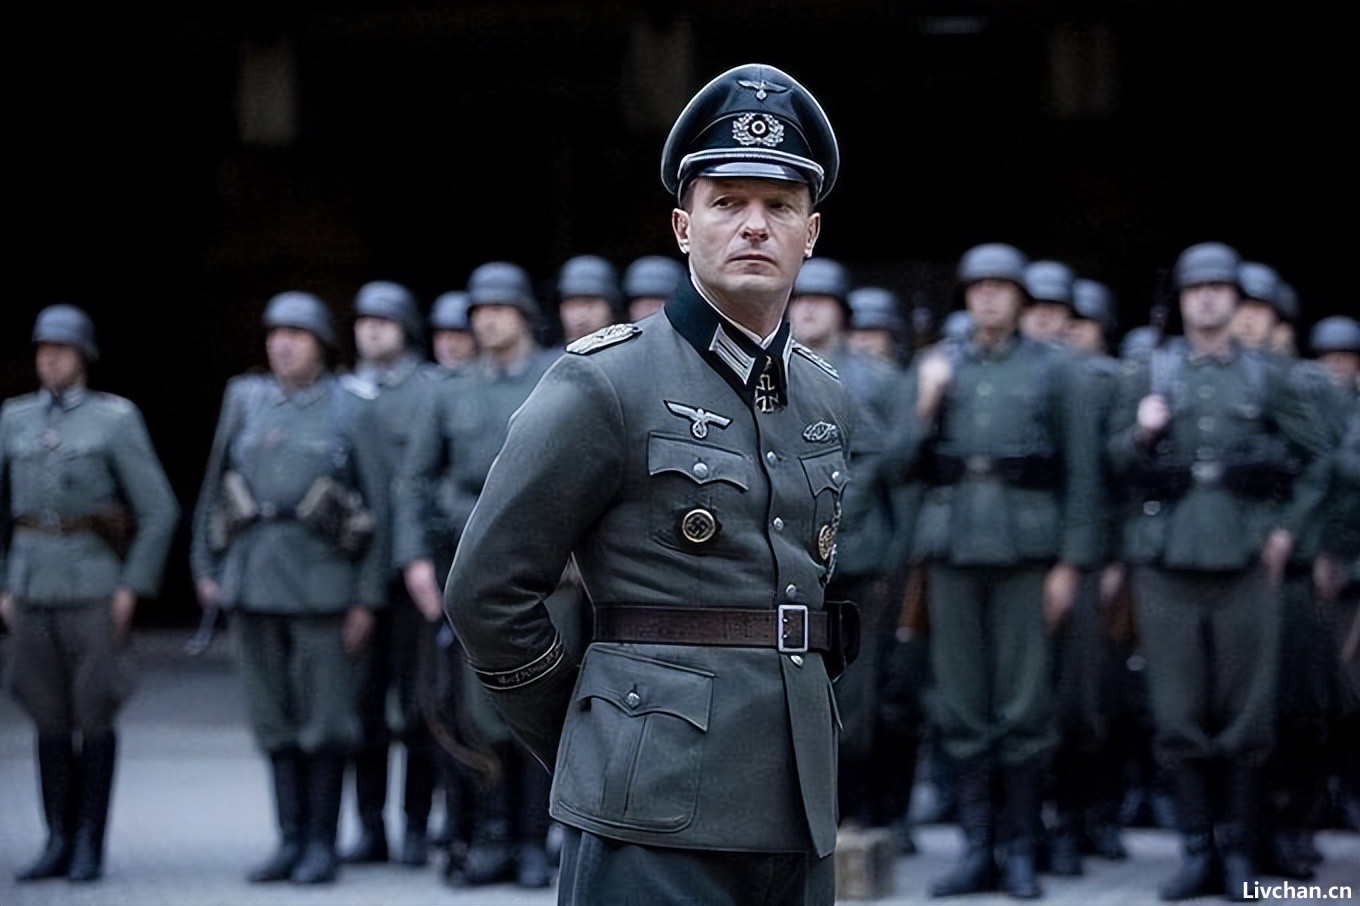 二战德军盖世太保军服是怎么设计的?为何英气逼人,吸引不少德粉?